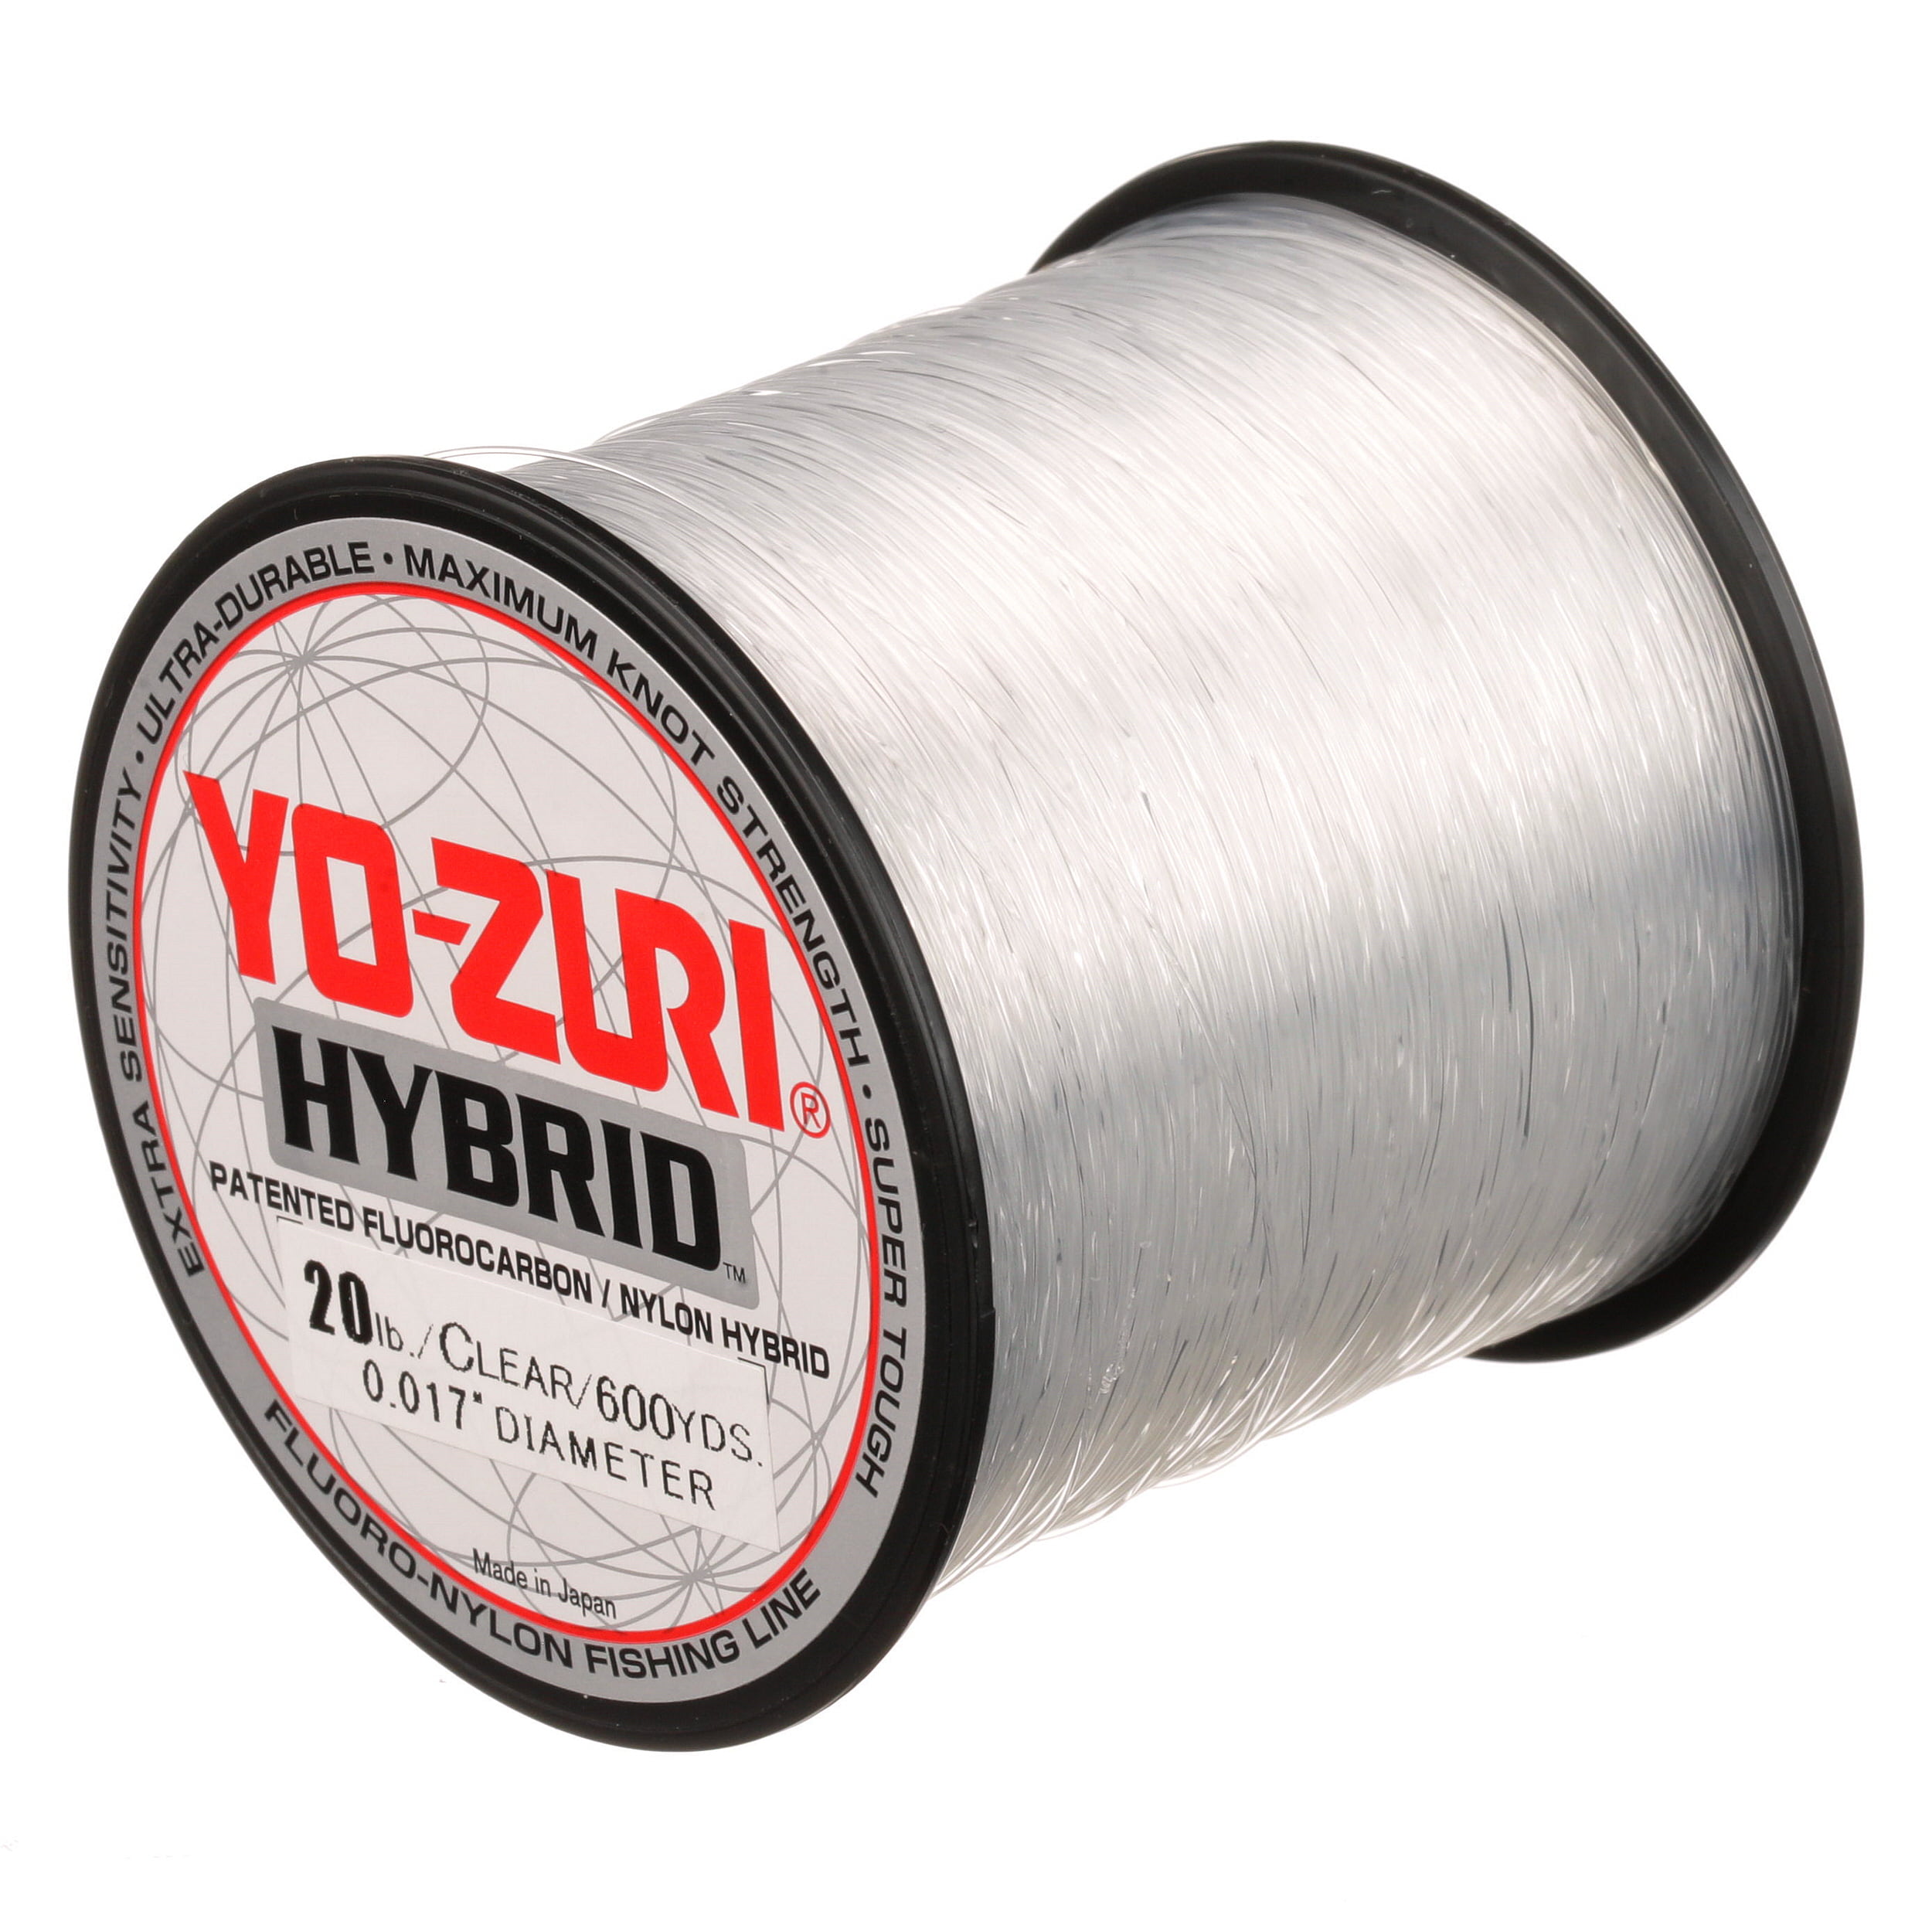 Yo-Zuri Hybrid 15 Lb Fluorocarbon & Nylon Fishing Line, Clear, 600 yd. 